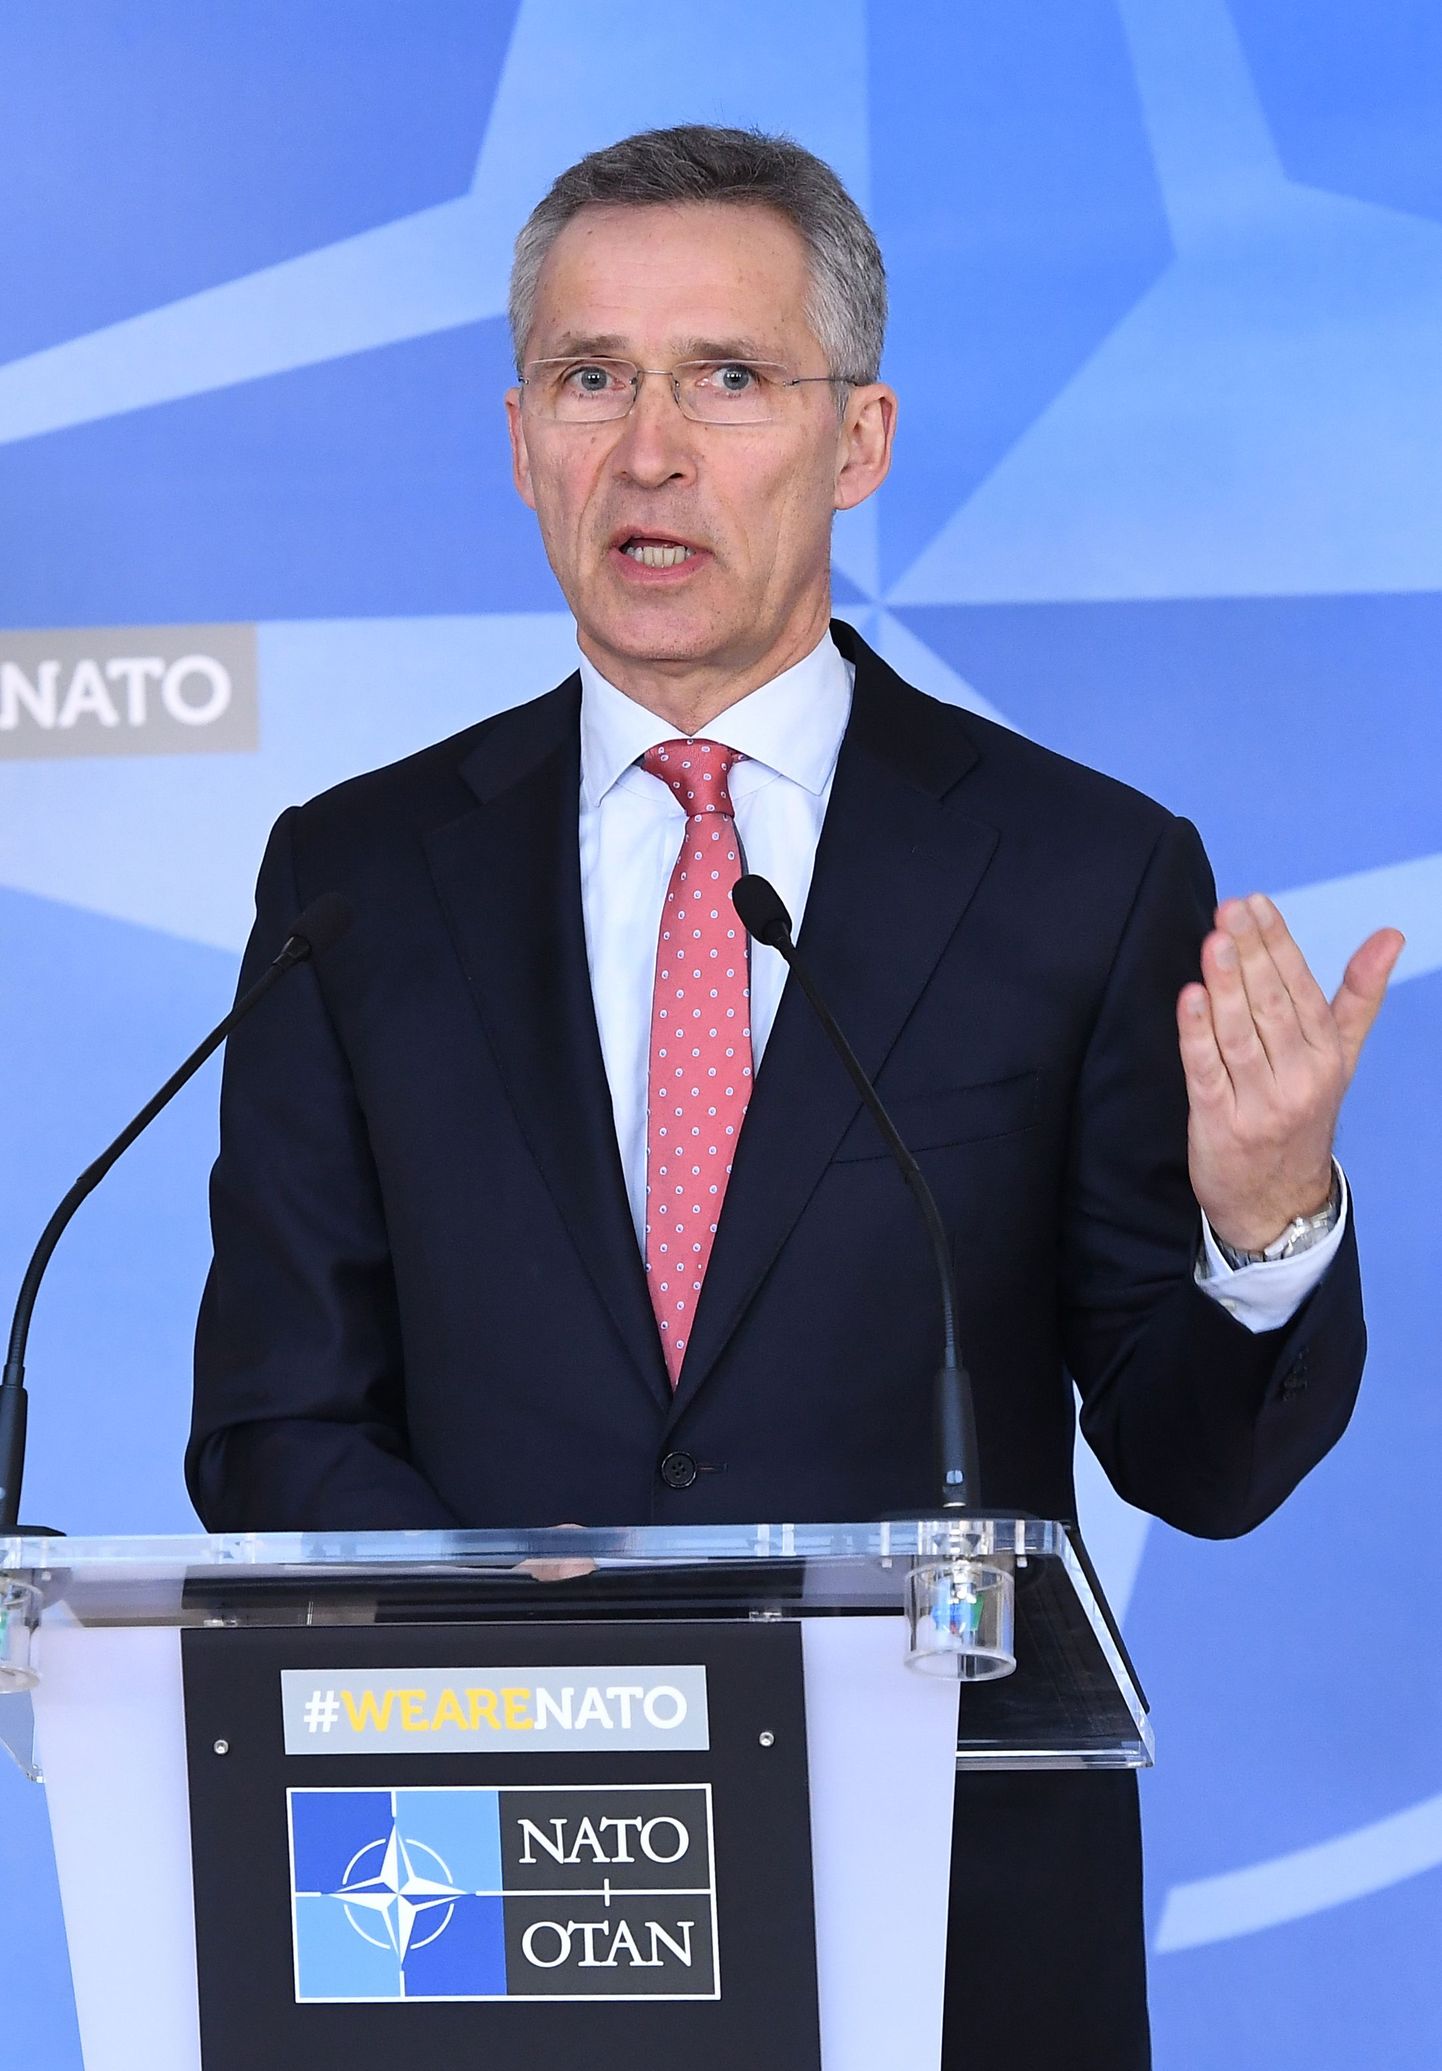 NATO peasekretäri Jens Stoltenbergi hinnangul jääb kolmandiku võrra ehk 20 diplomaadile kärbitud Vene esindus alliansi juures just parajalt suureks, et edendada poliitilist dialoogi.